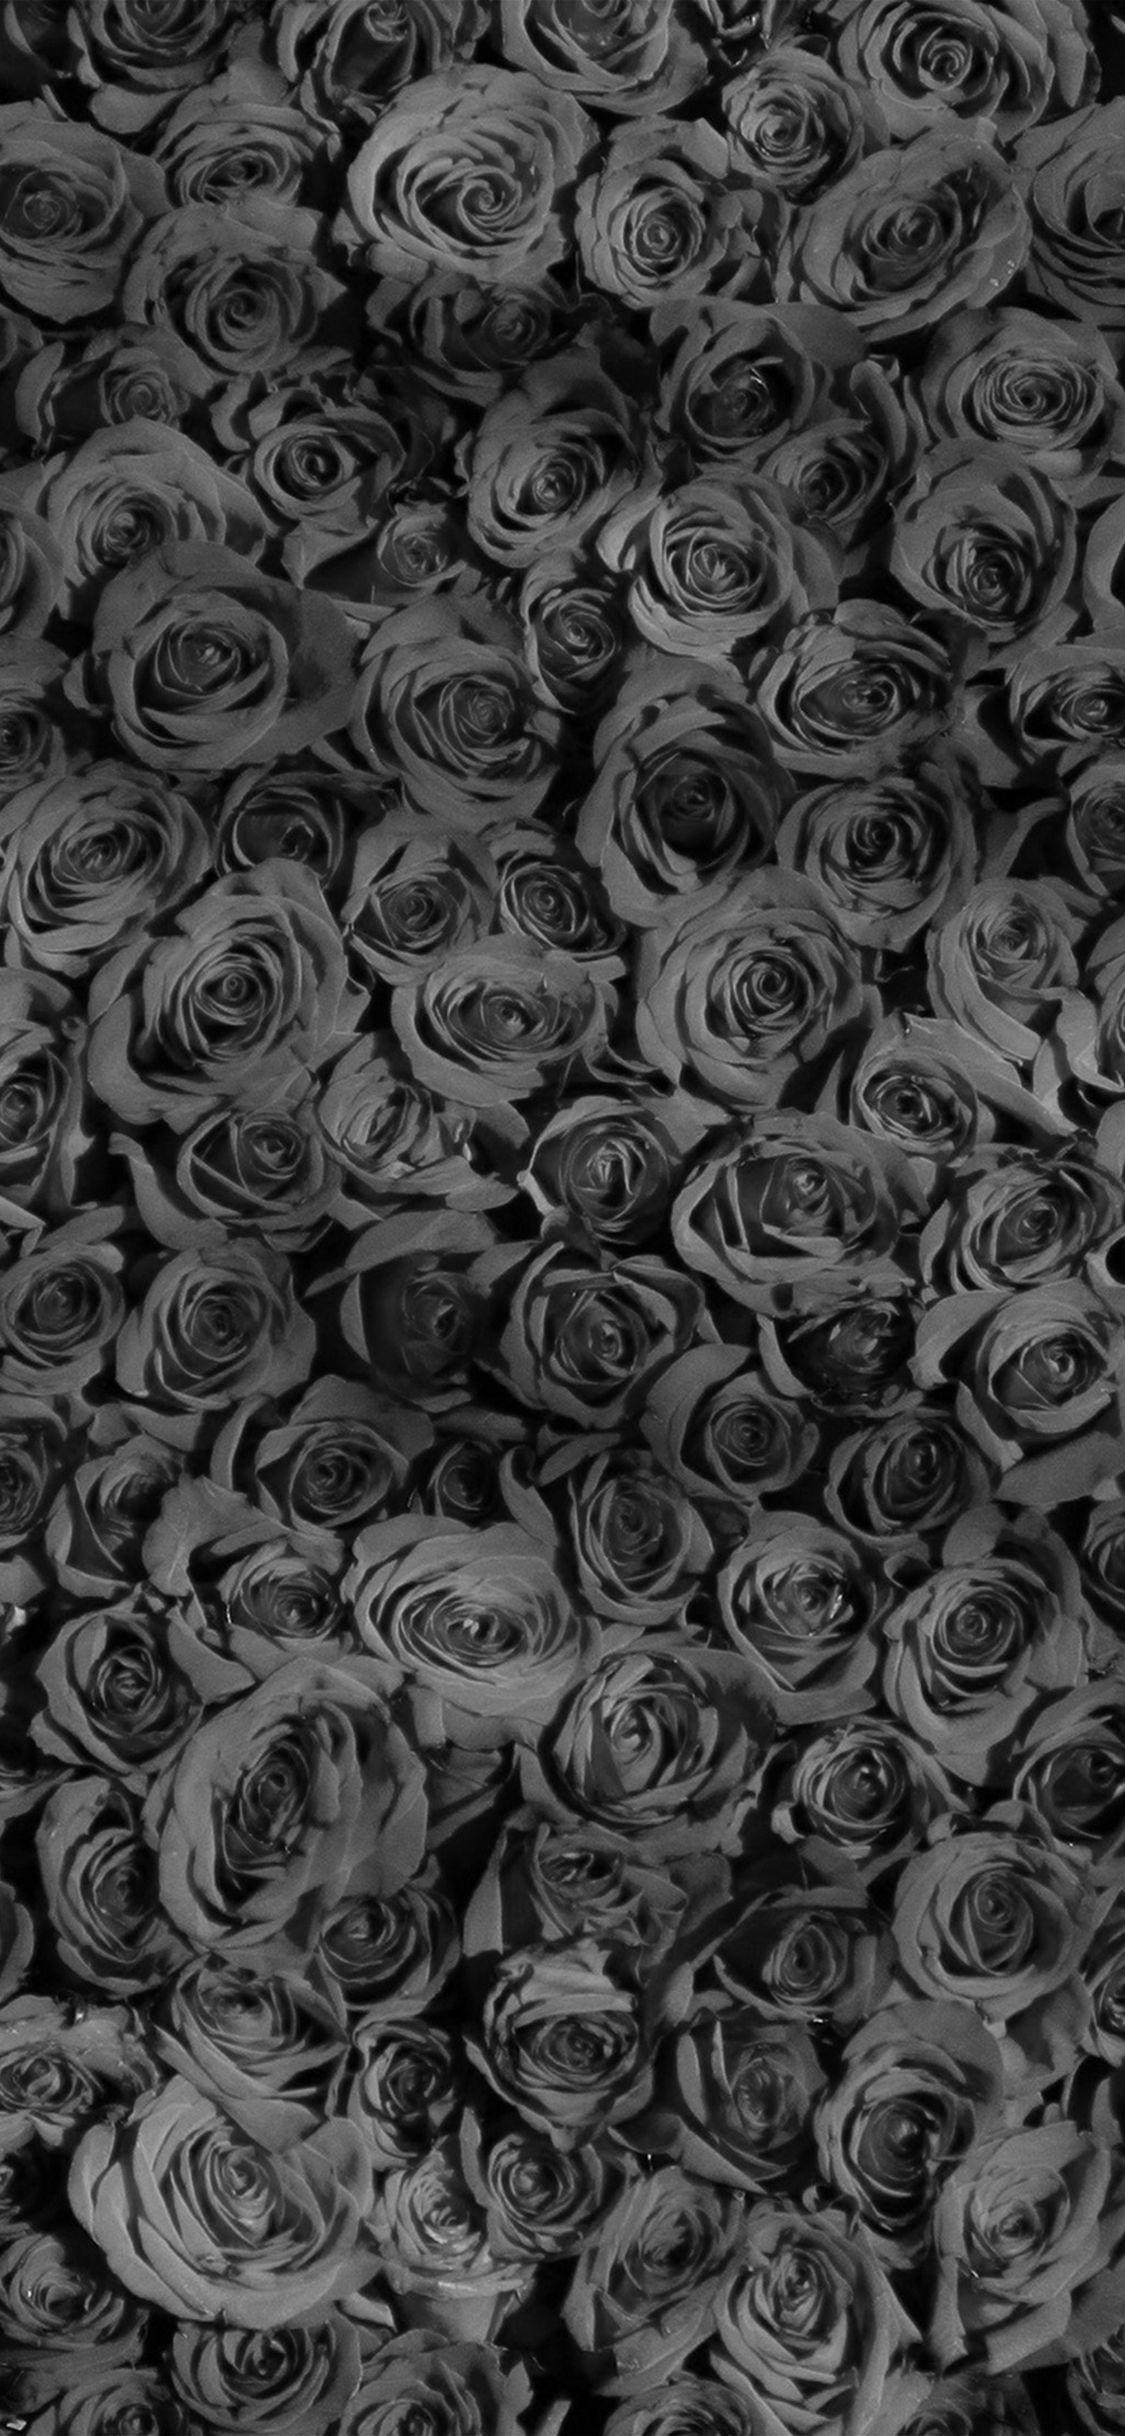 Rose Dark Bw Pattern X Wallpaper Rose, HD